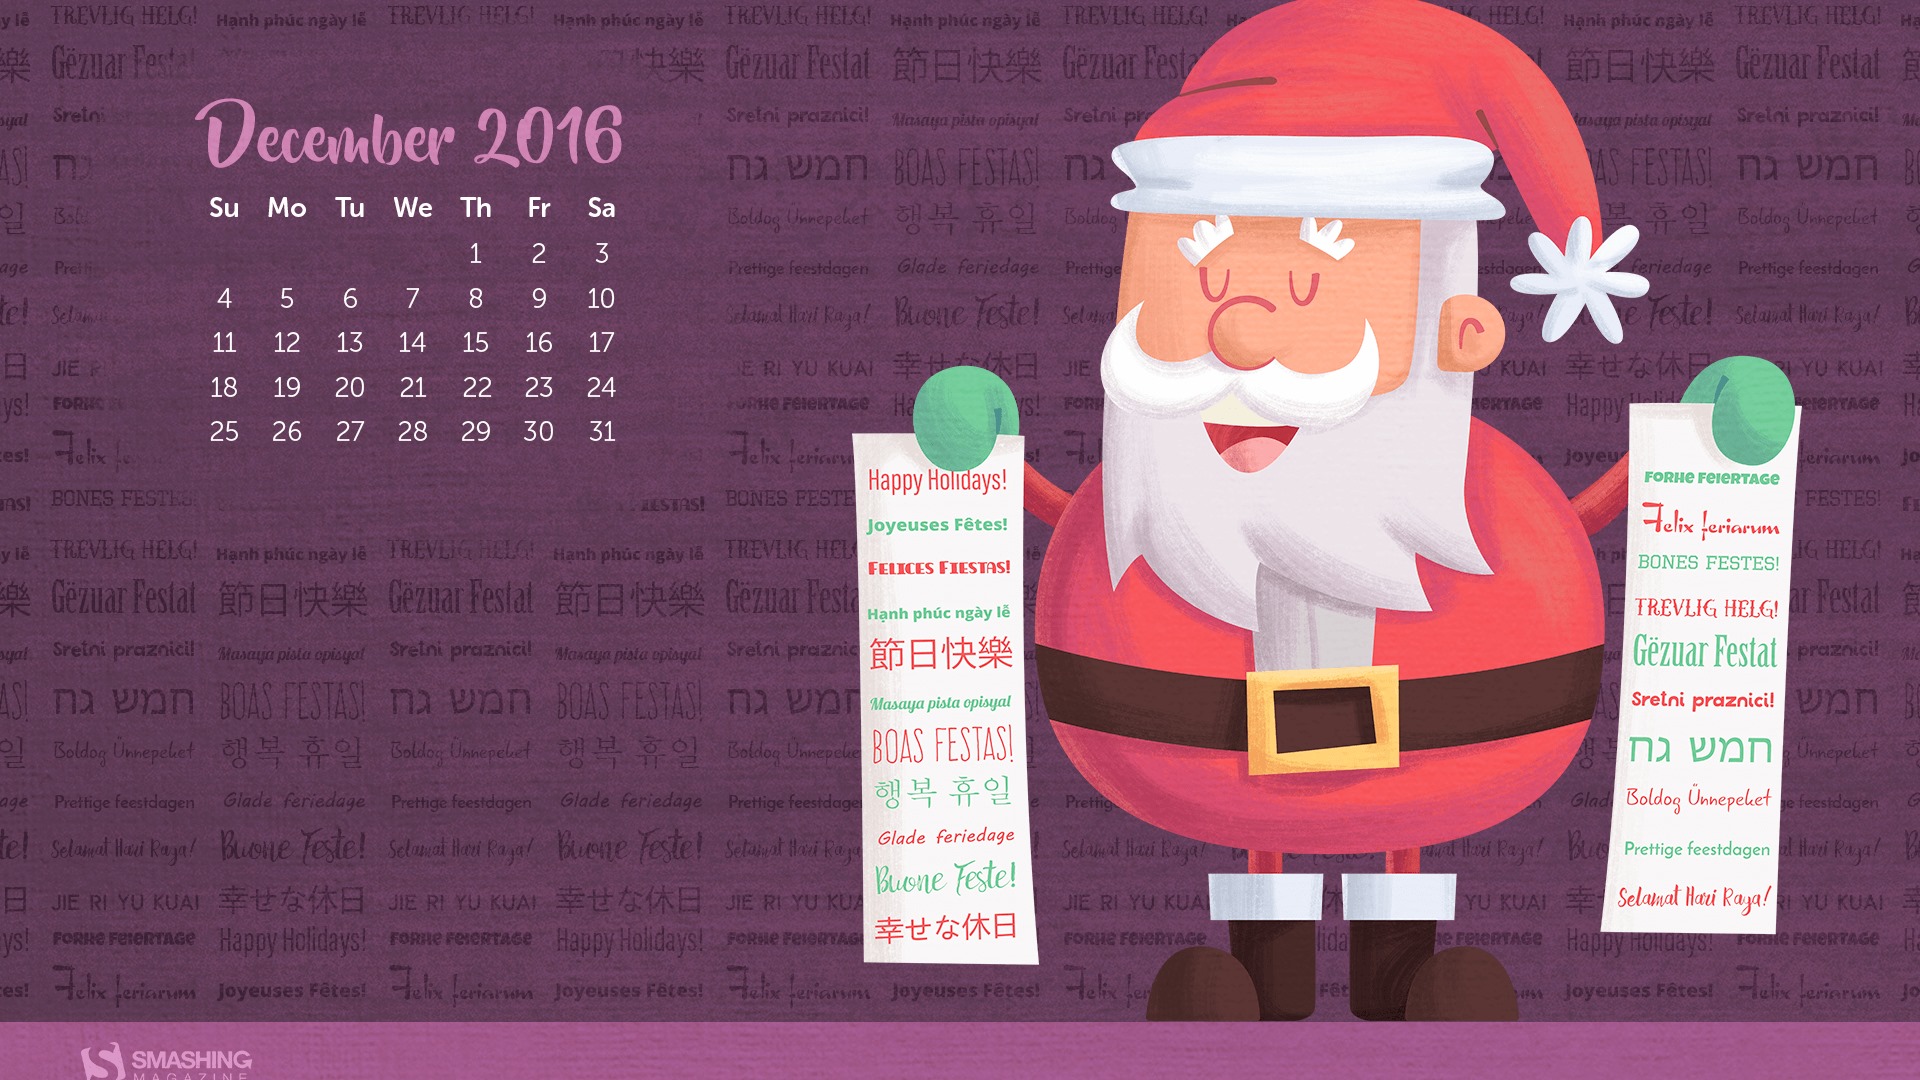 December 2016 Christmas theme calendar wallpaper (1) #24 - 1920x1080